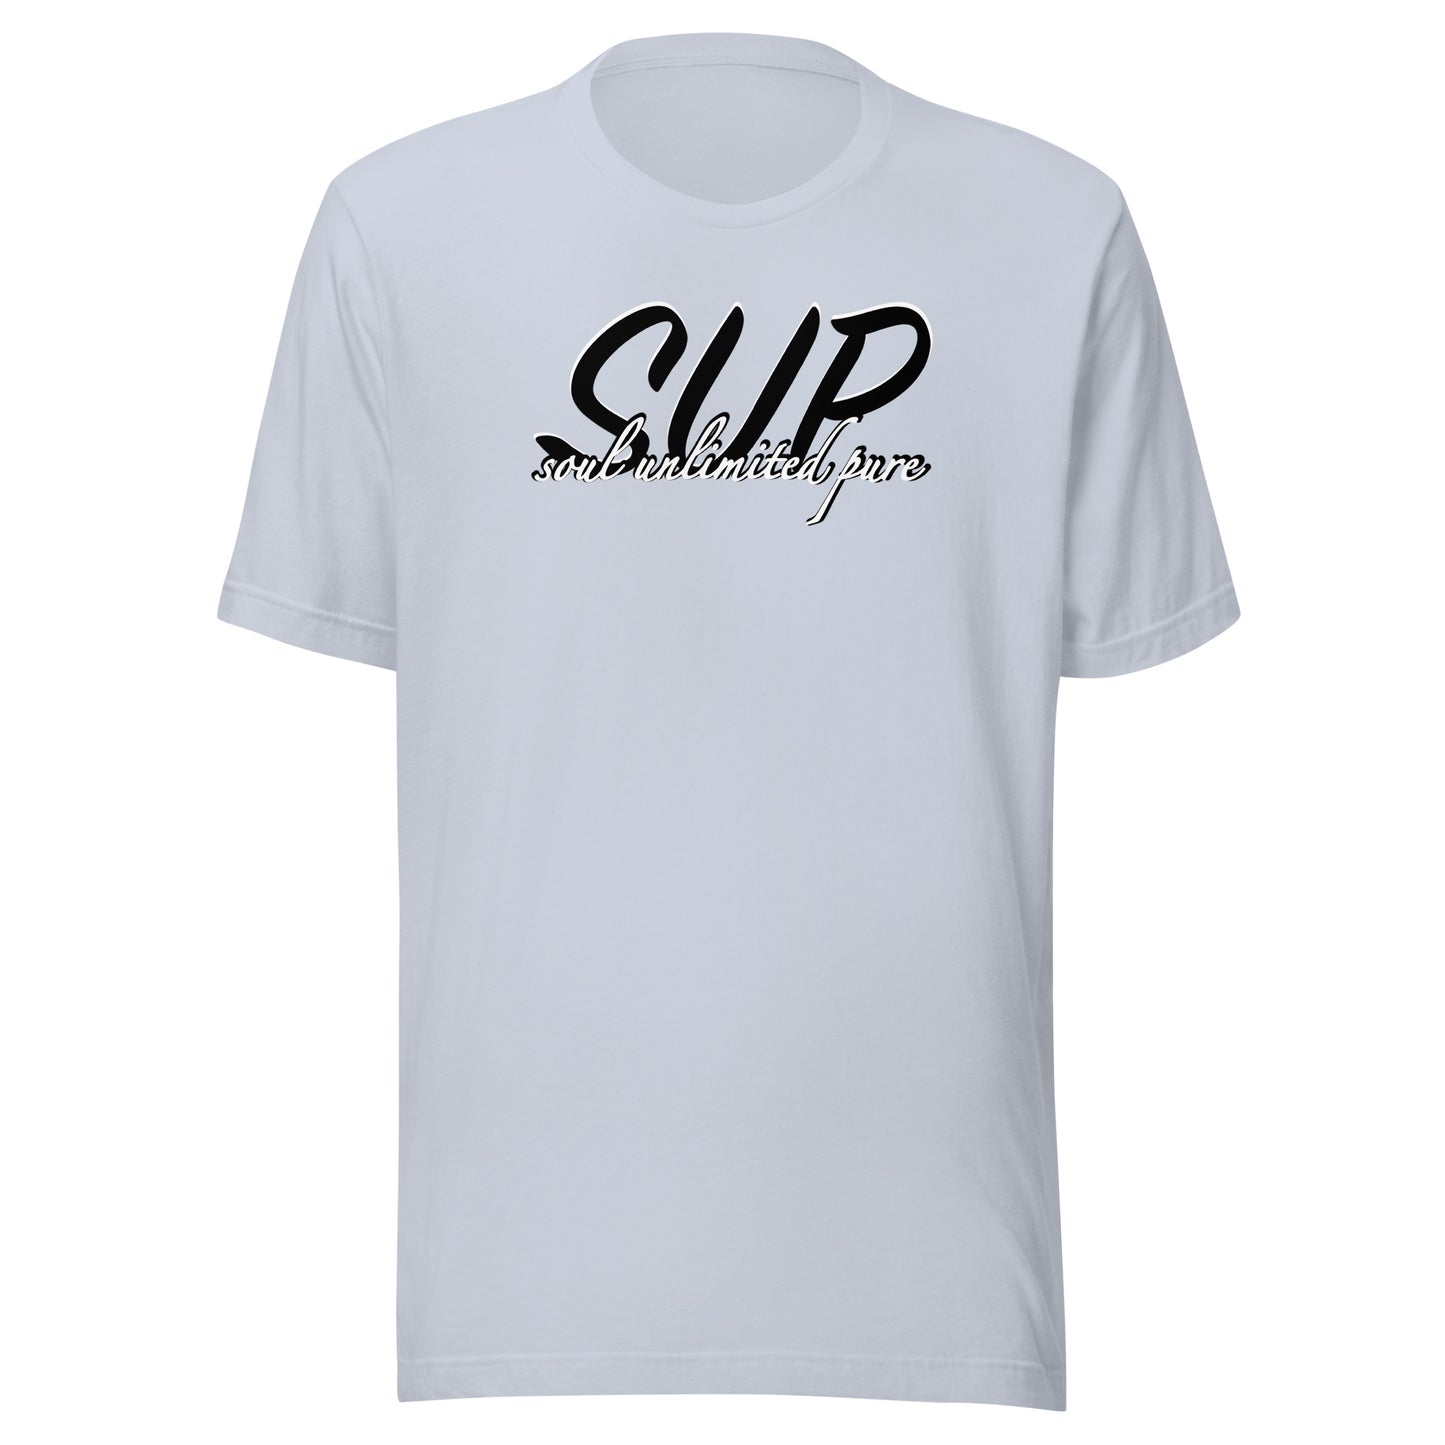 SUP-Soul-unisex-T-Shirt